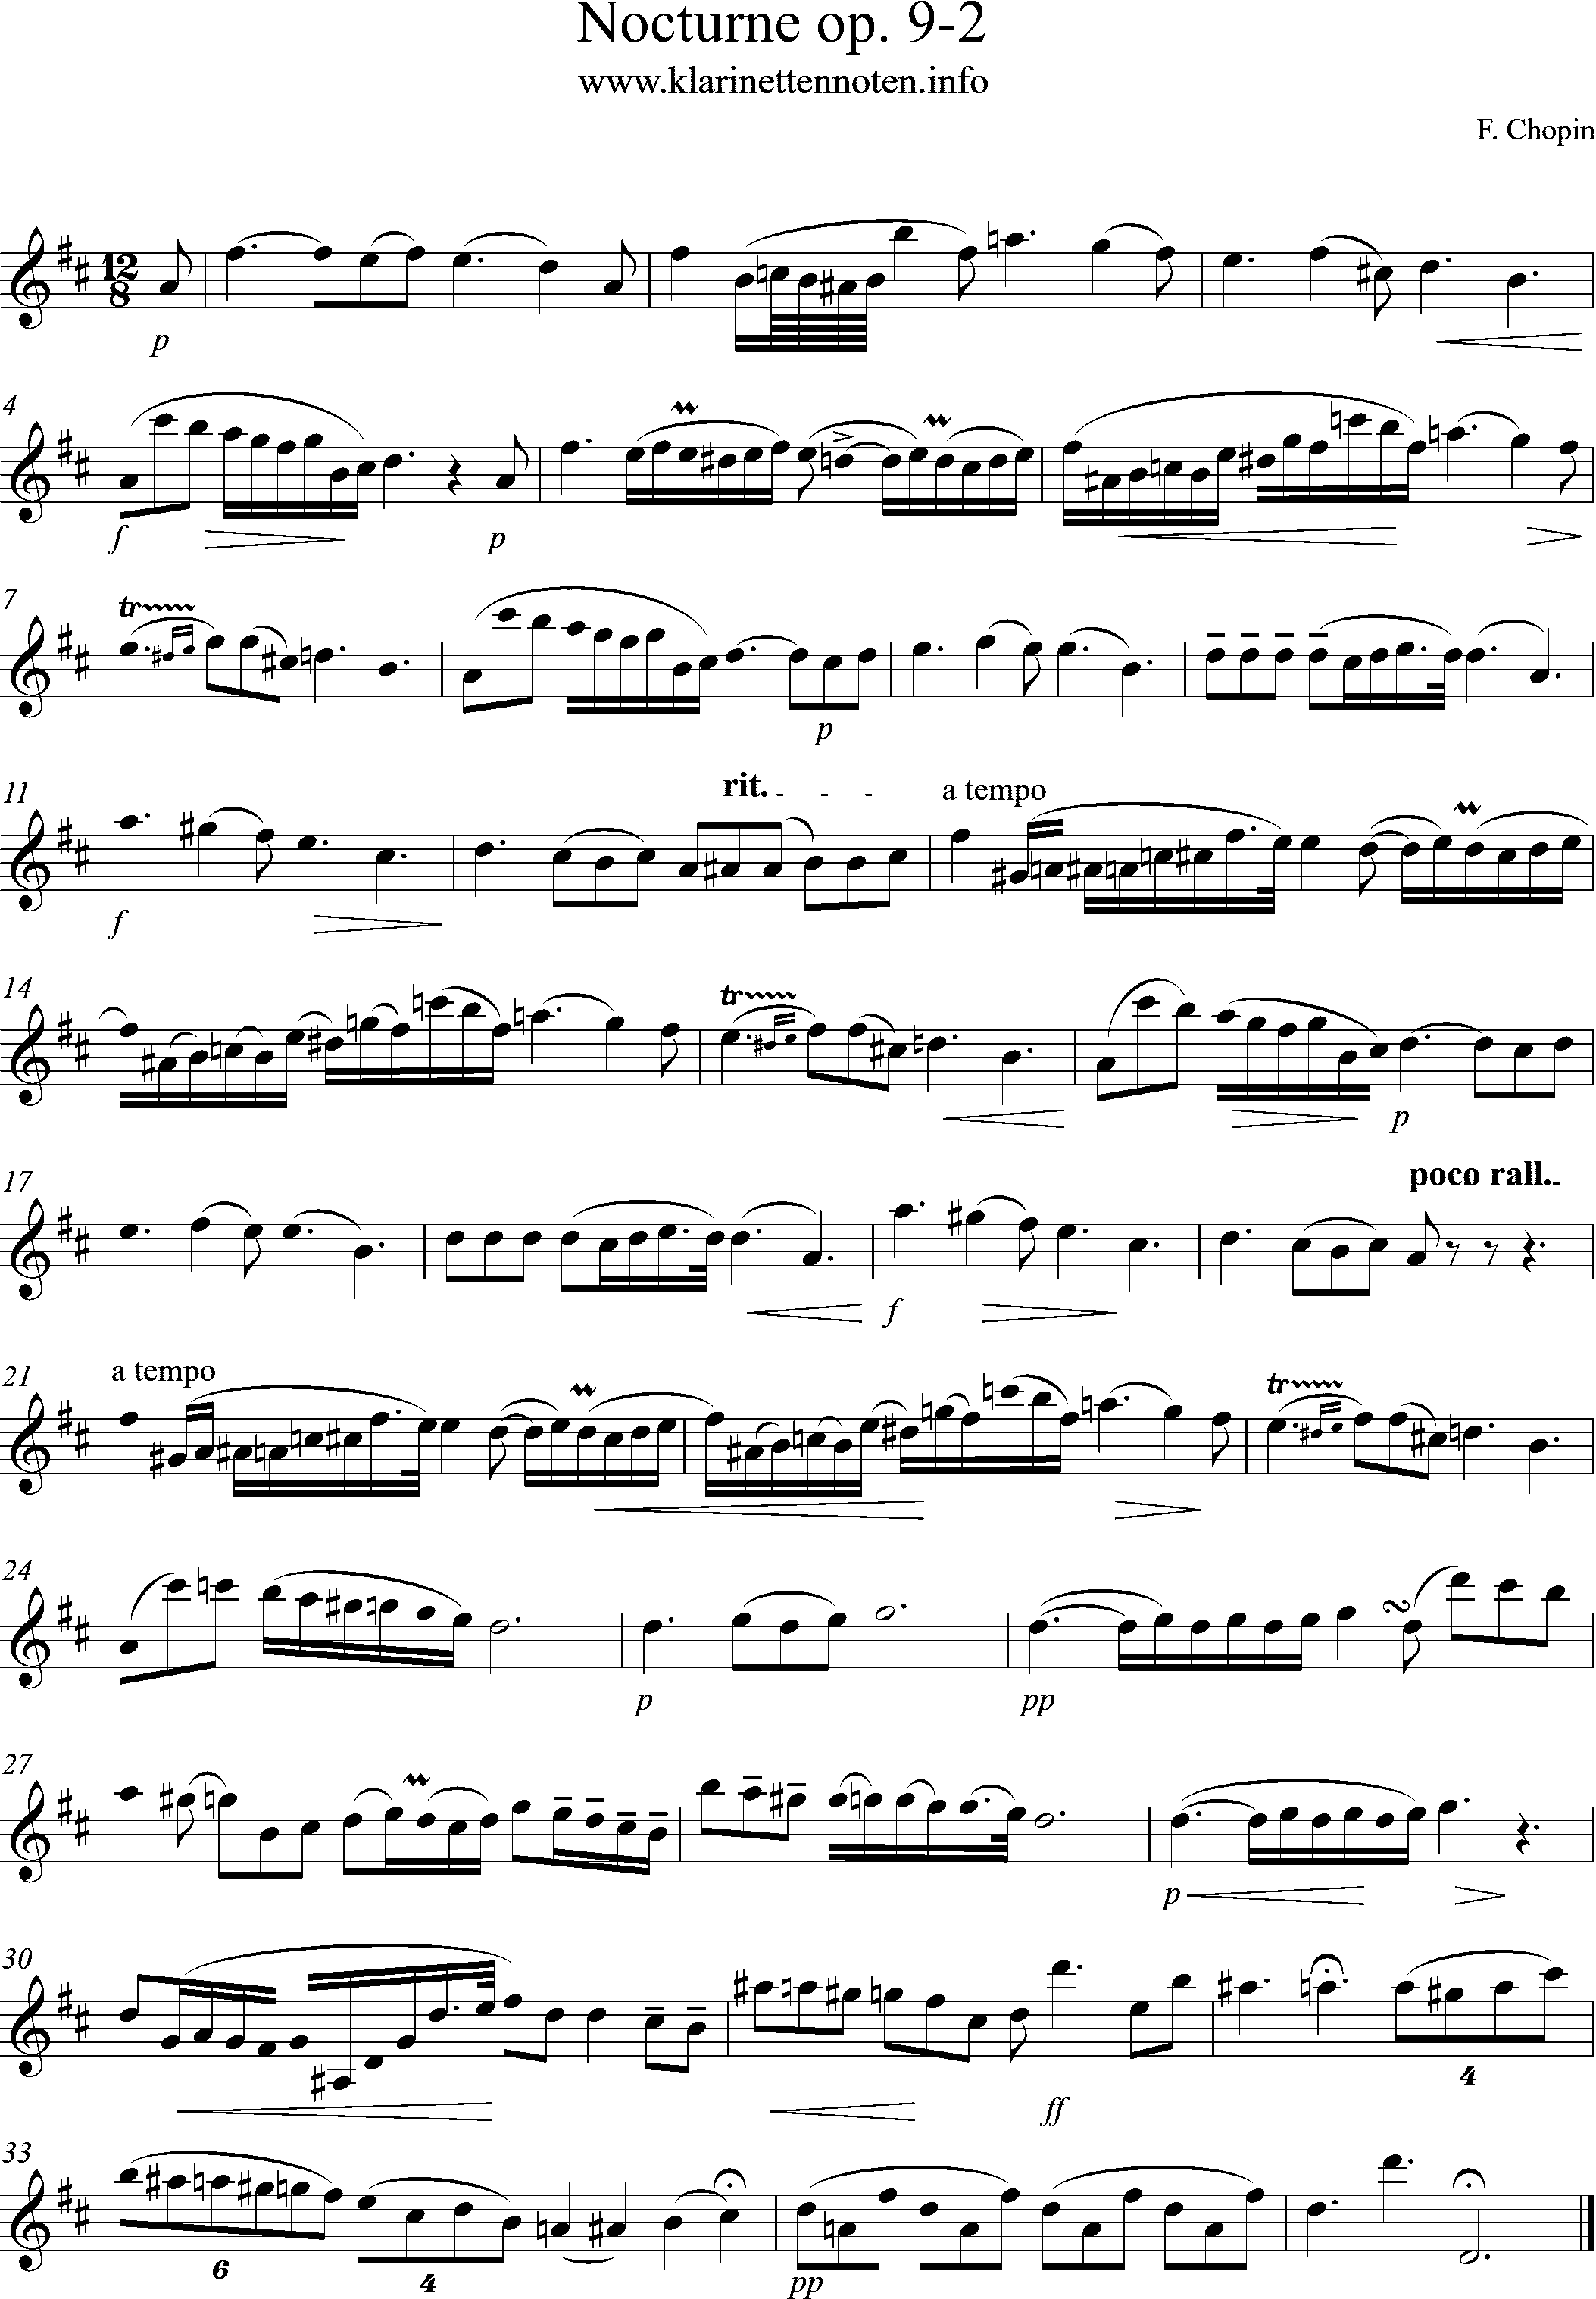 Chopin, op. 9/2 - Nocturne